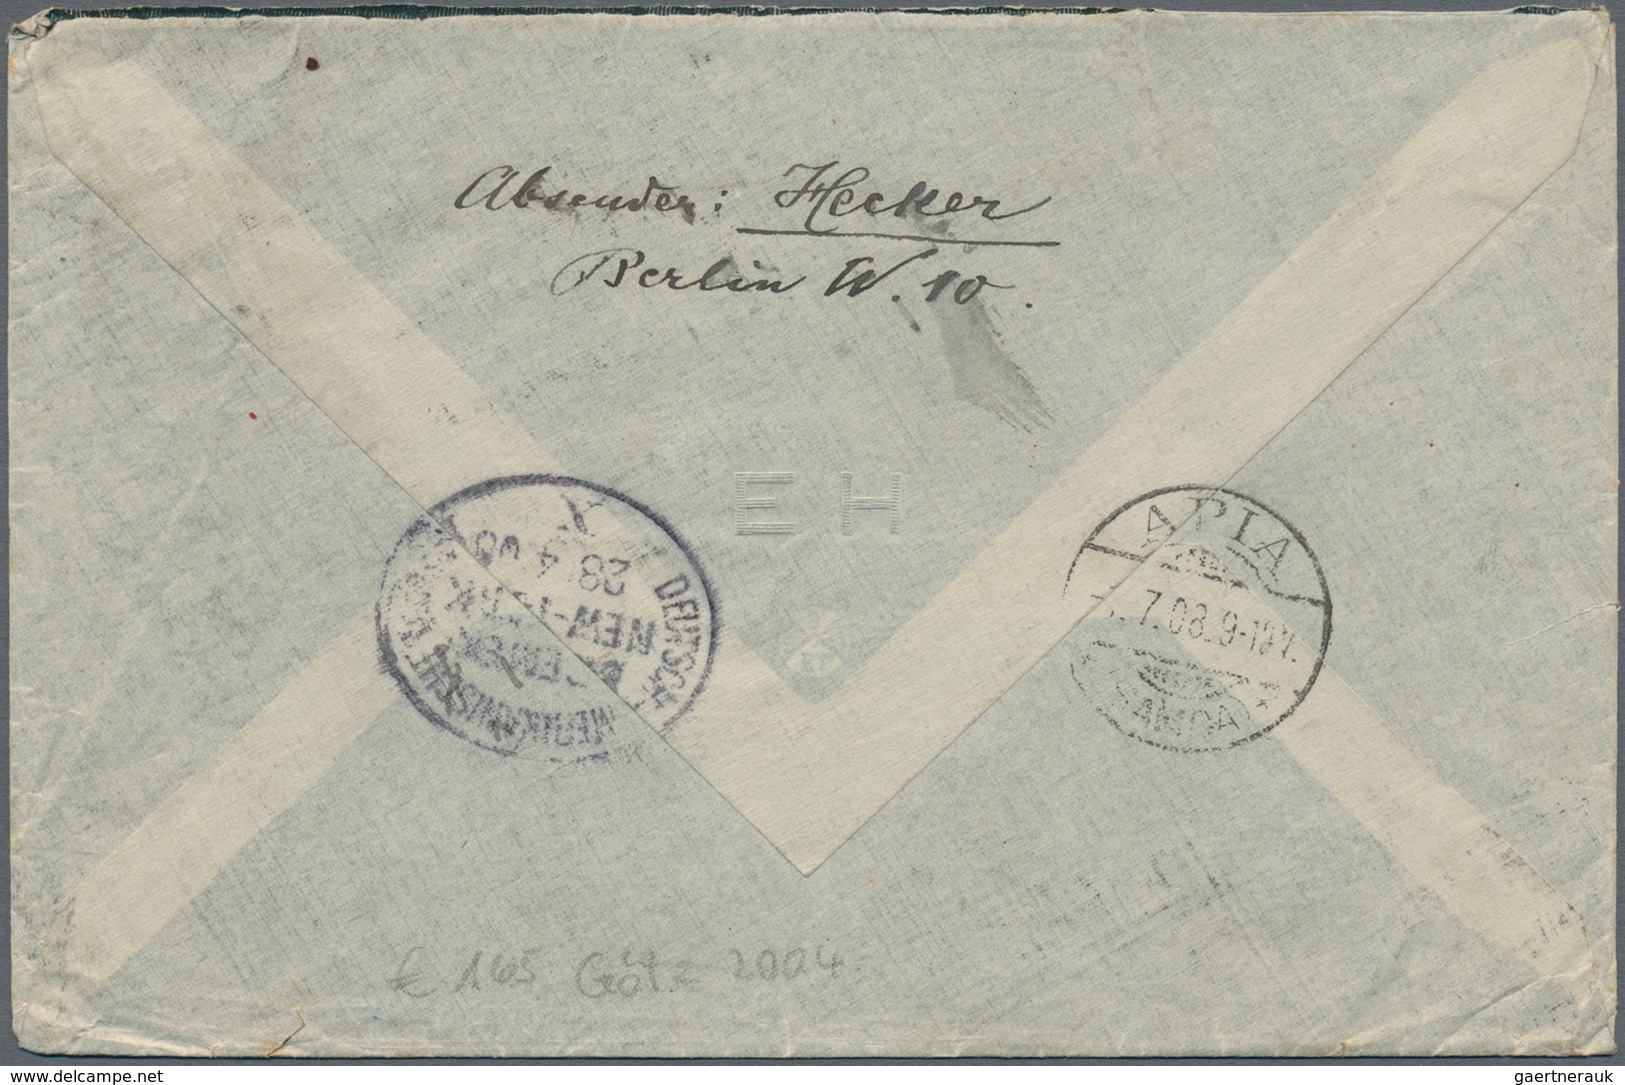 Deutsche Kolonien - Samoa - Besonderheiten: 1908 (25.4.), Einschreibe-Brief Mit Dekorativer Fünffarb - Samoa